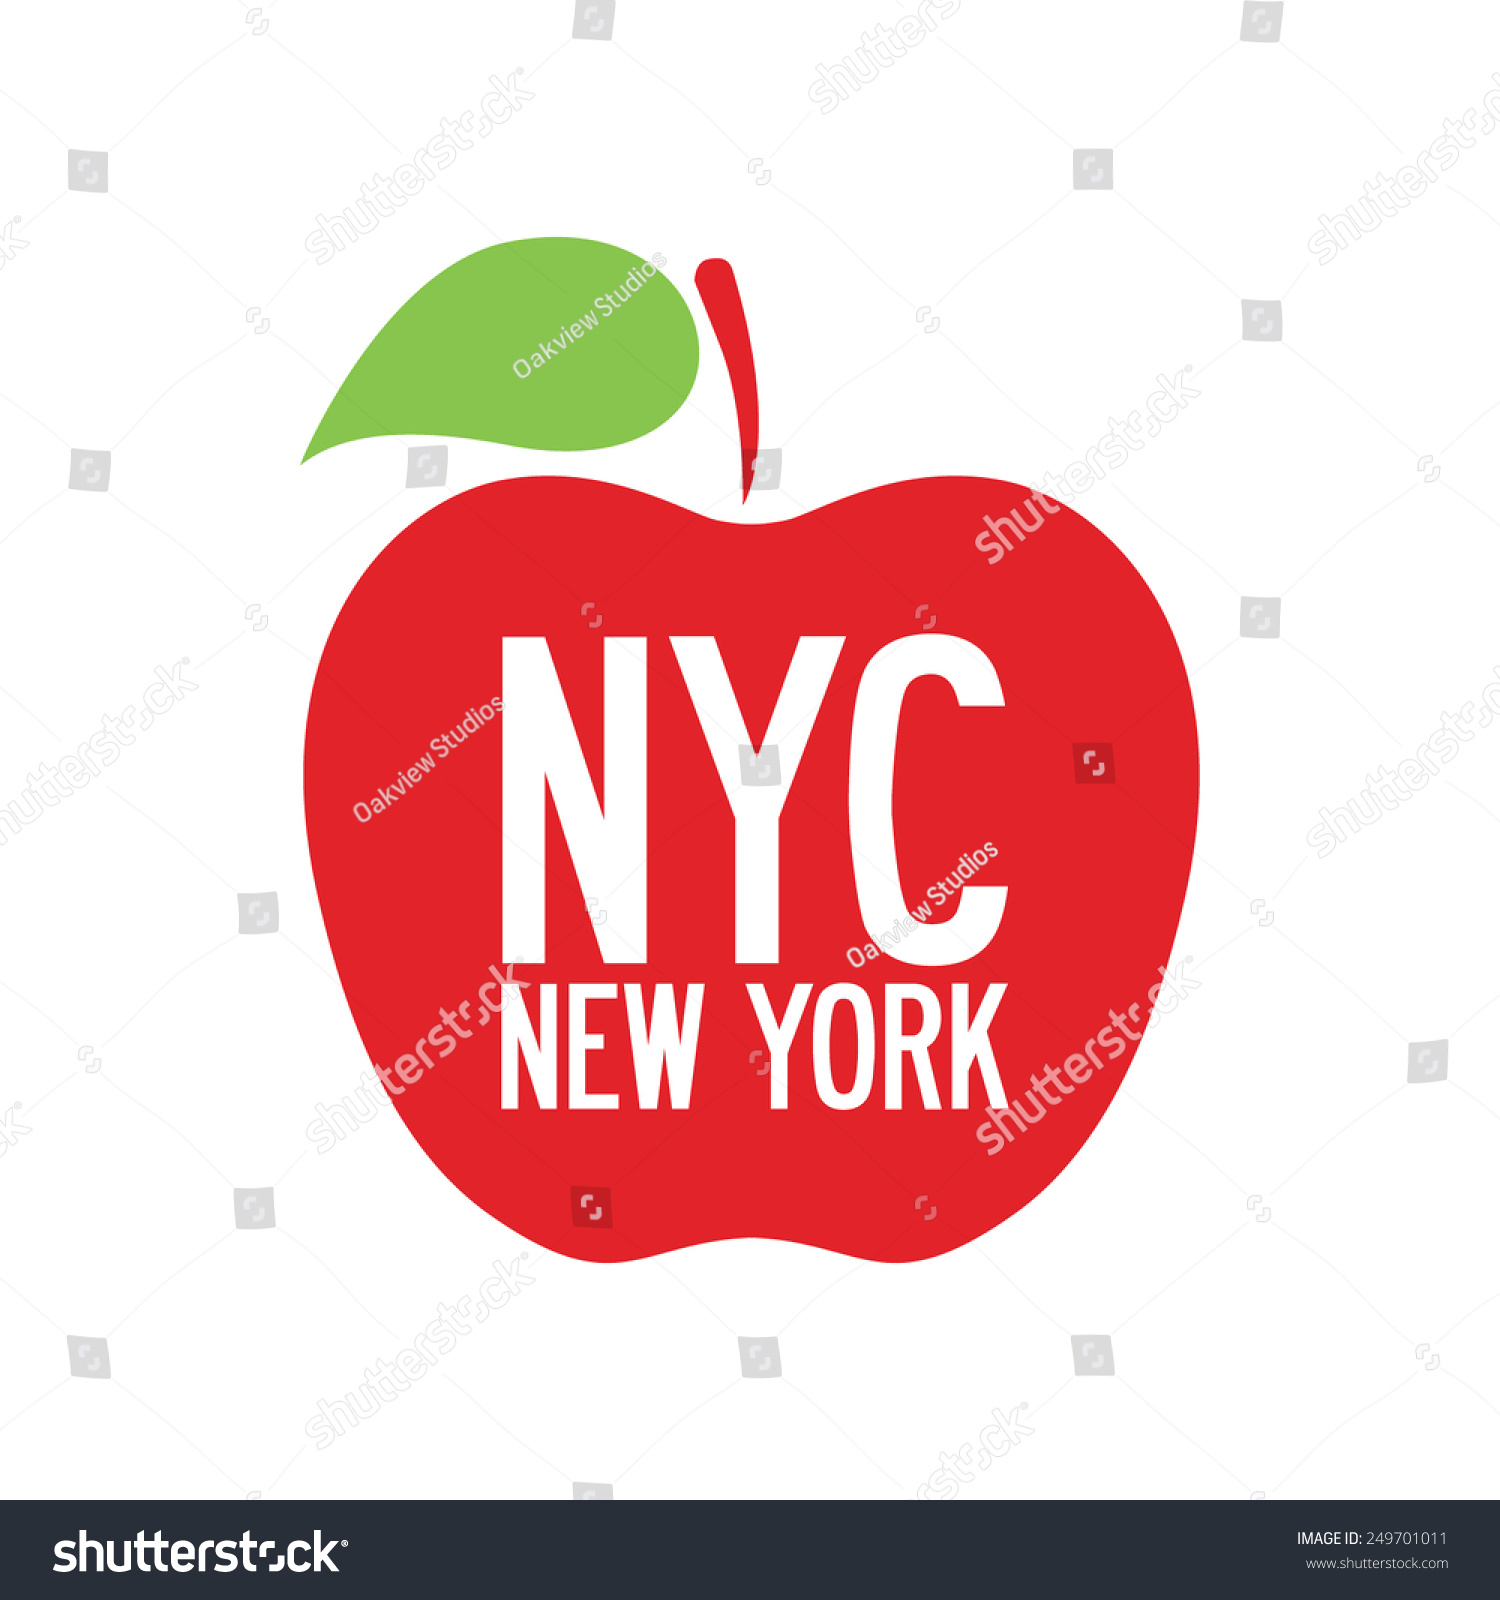 3D BUCHSTABEN NEW YORK  Acryl Städte Länder Big Apple Dekoration Wandbild 